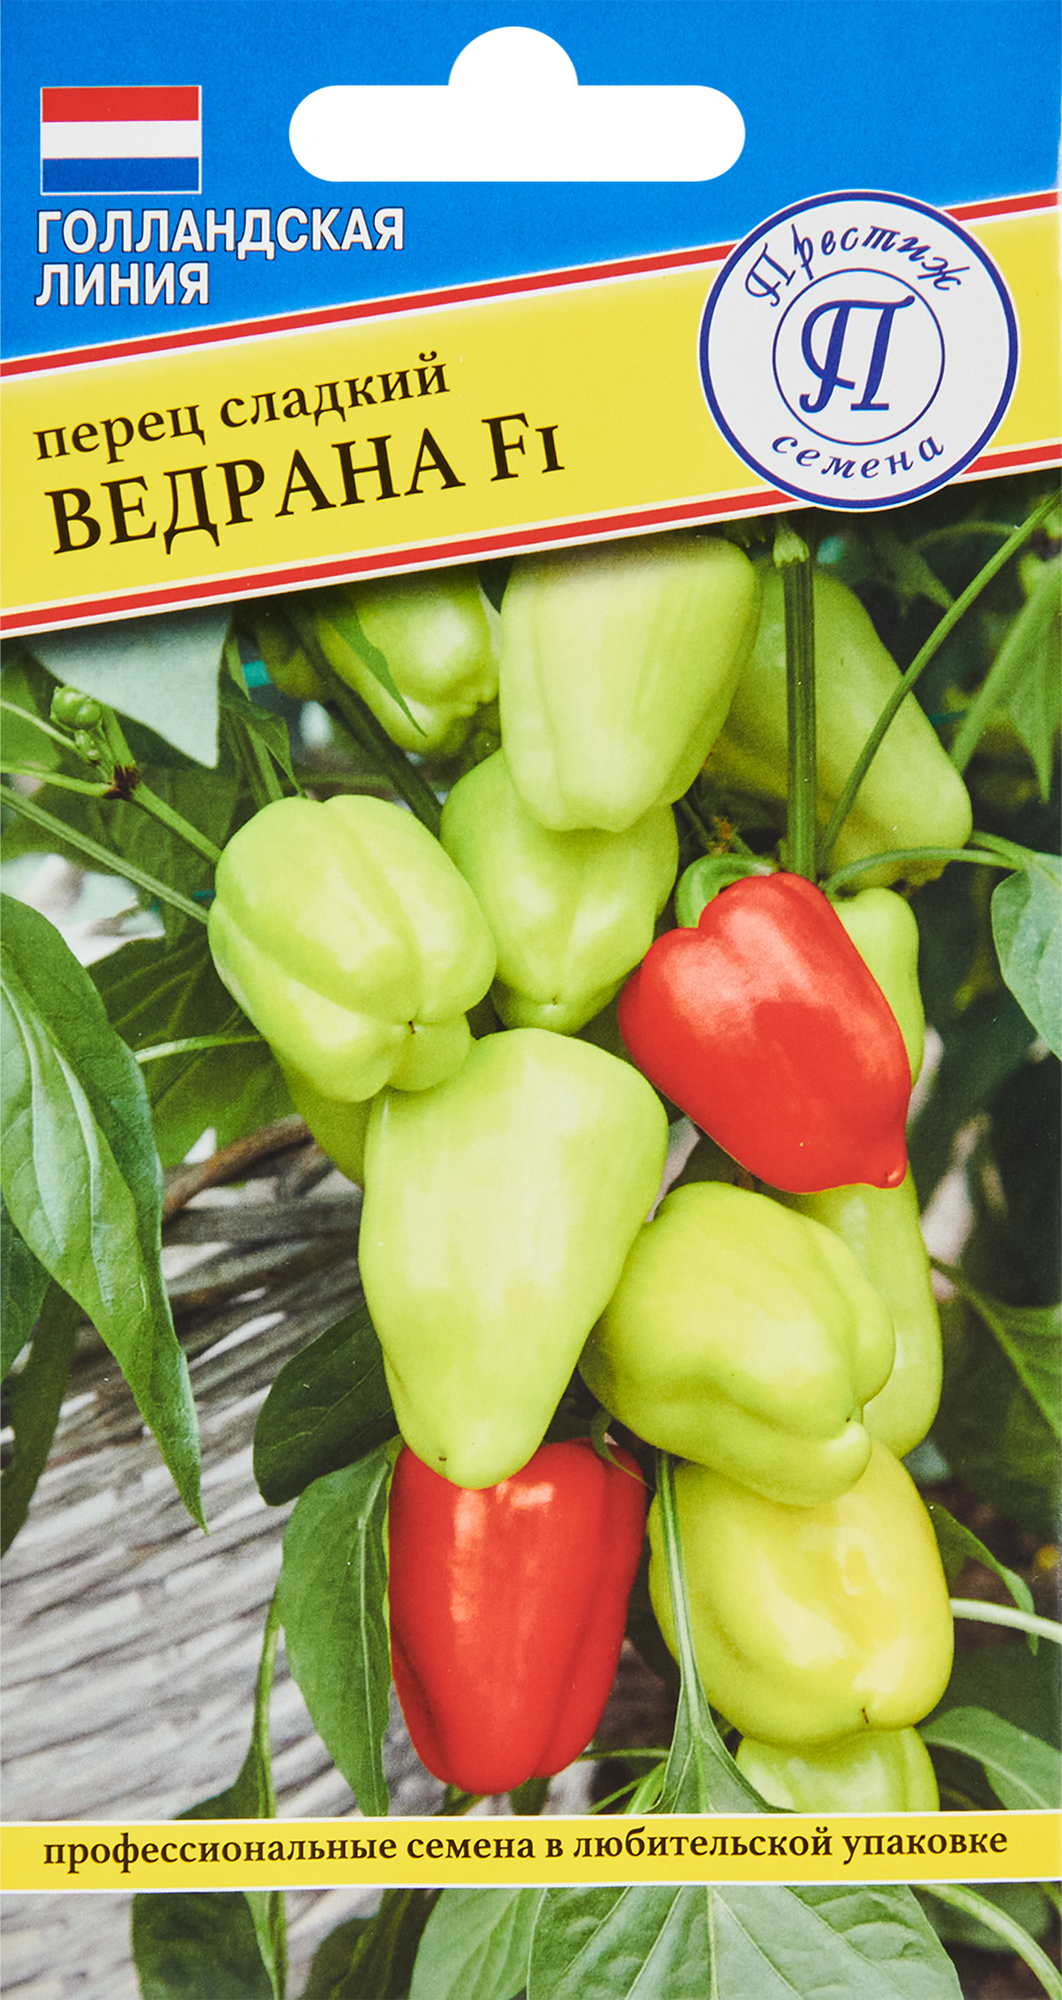 Семена овощей перец сладкий Ведрана F1, 3 шт. в Москве – купить по низкойцене в интернет-магазине Леруа Мерлен